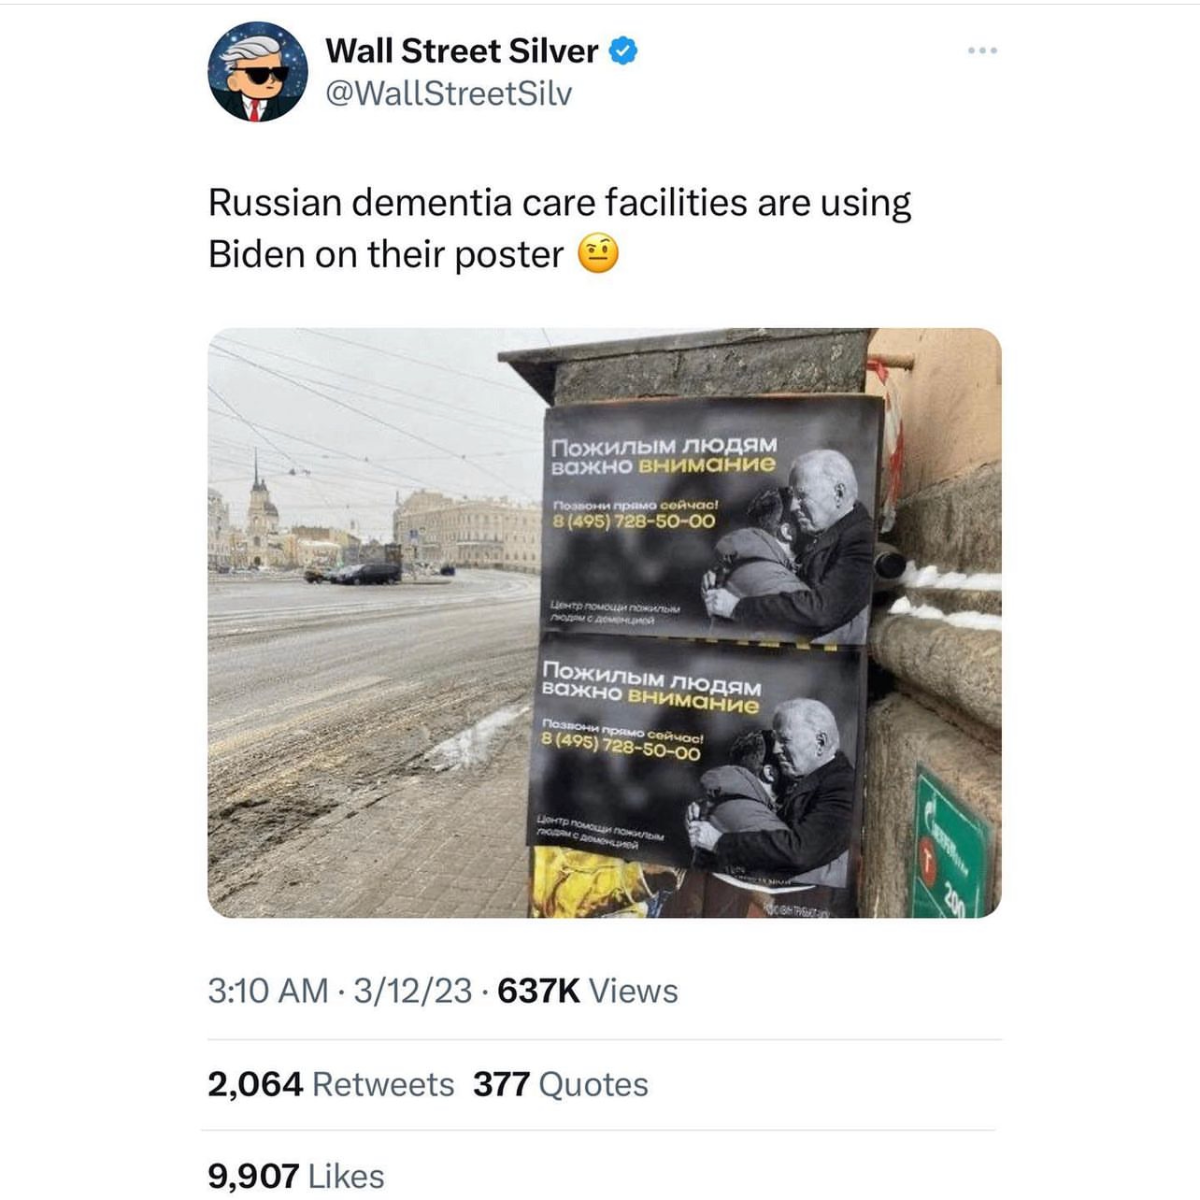 Tweet showing poster in Russia described above.